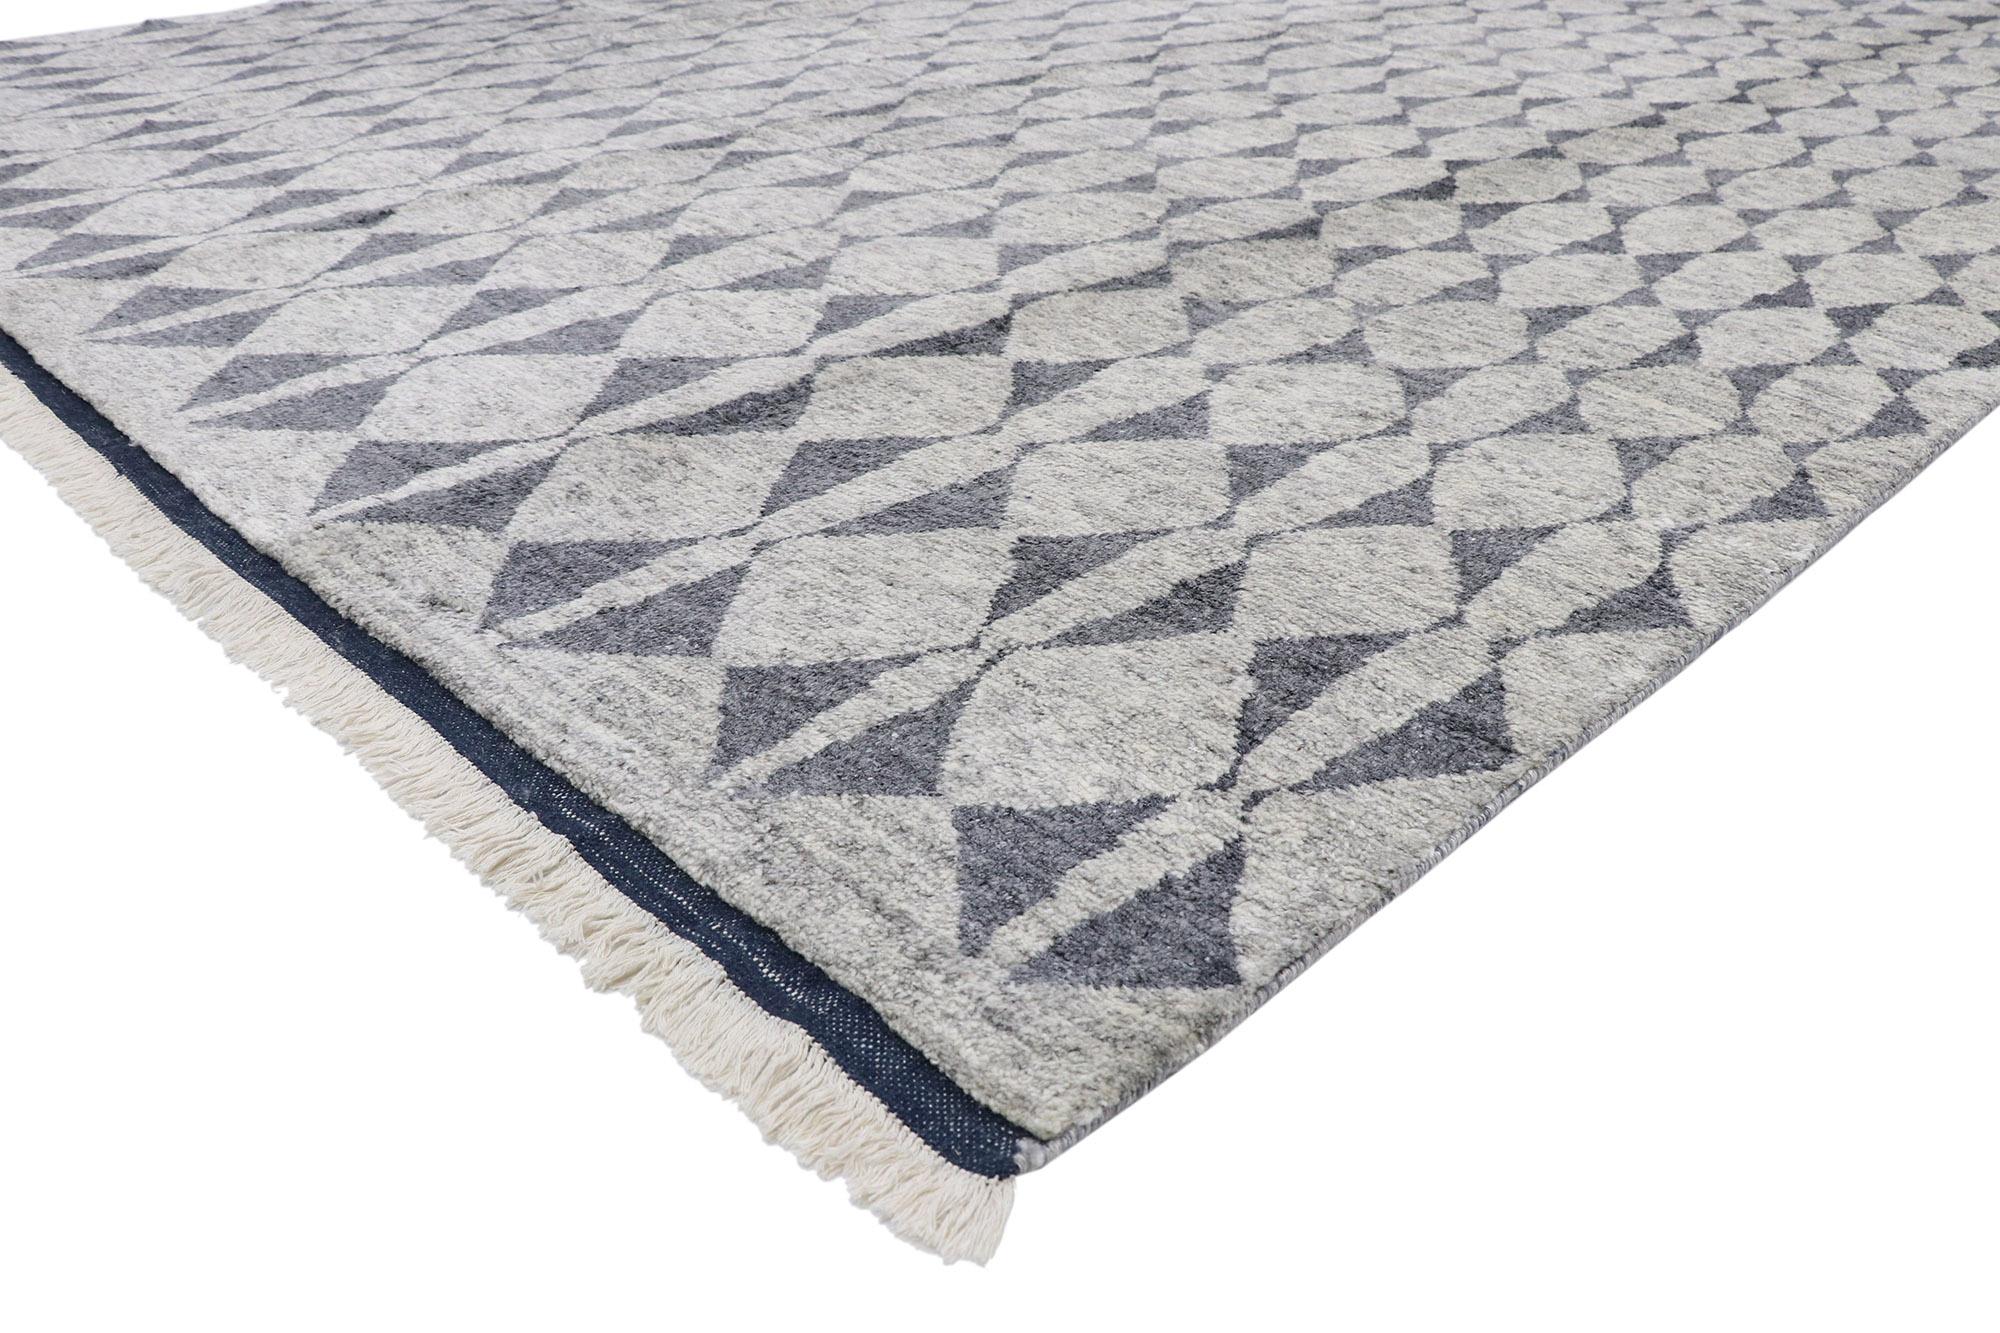 30354 Nouveau tapis marocain contemporain avec un style scandinave et nouveau nordique. Ce tapis marocain contemporain en laine nouée à la main, de style New Nordic, présente un motif triangulaire sur toute sa surface. Les triangles s'unissent pour